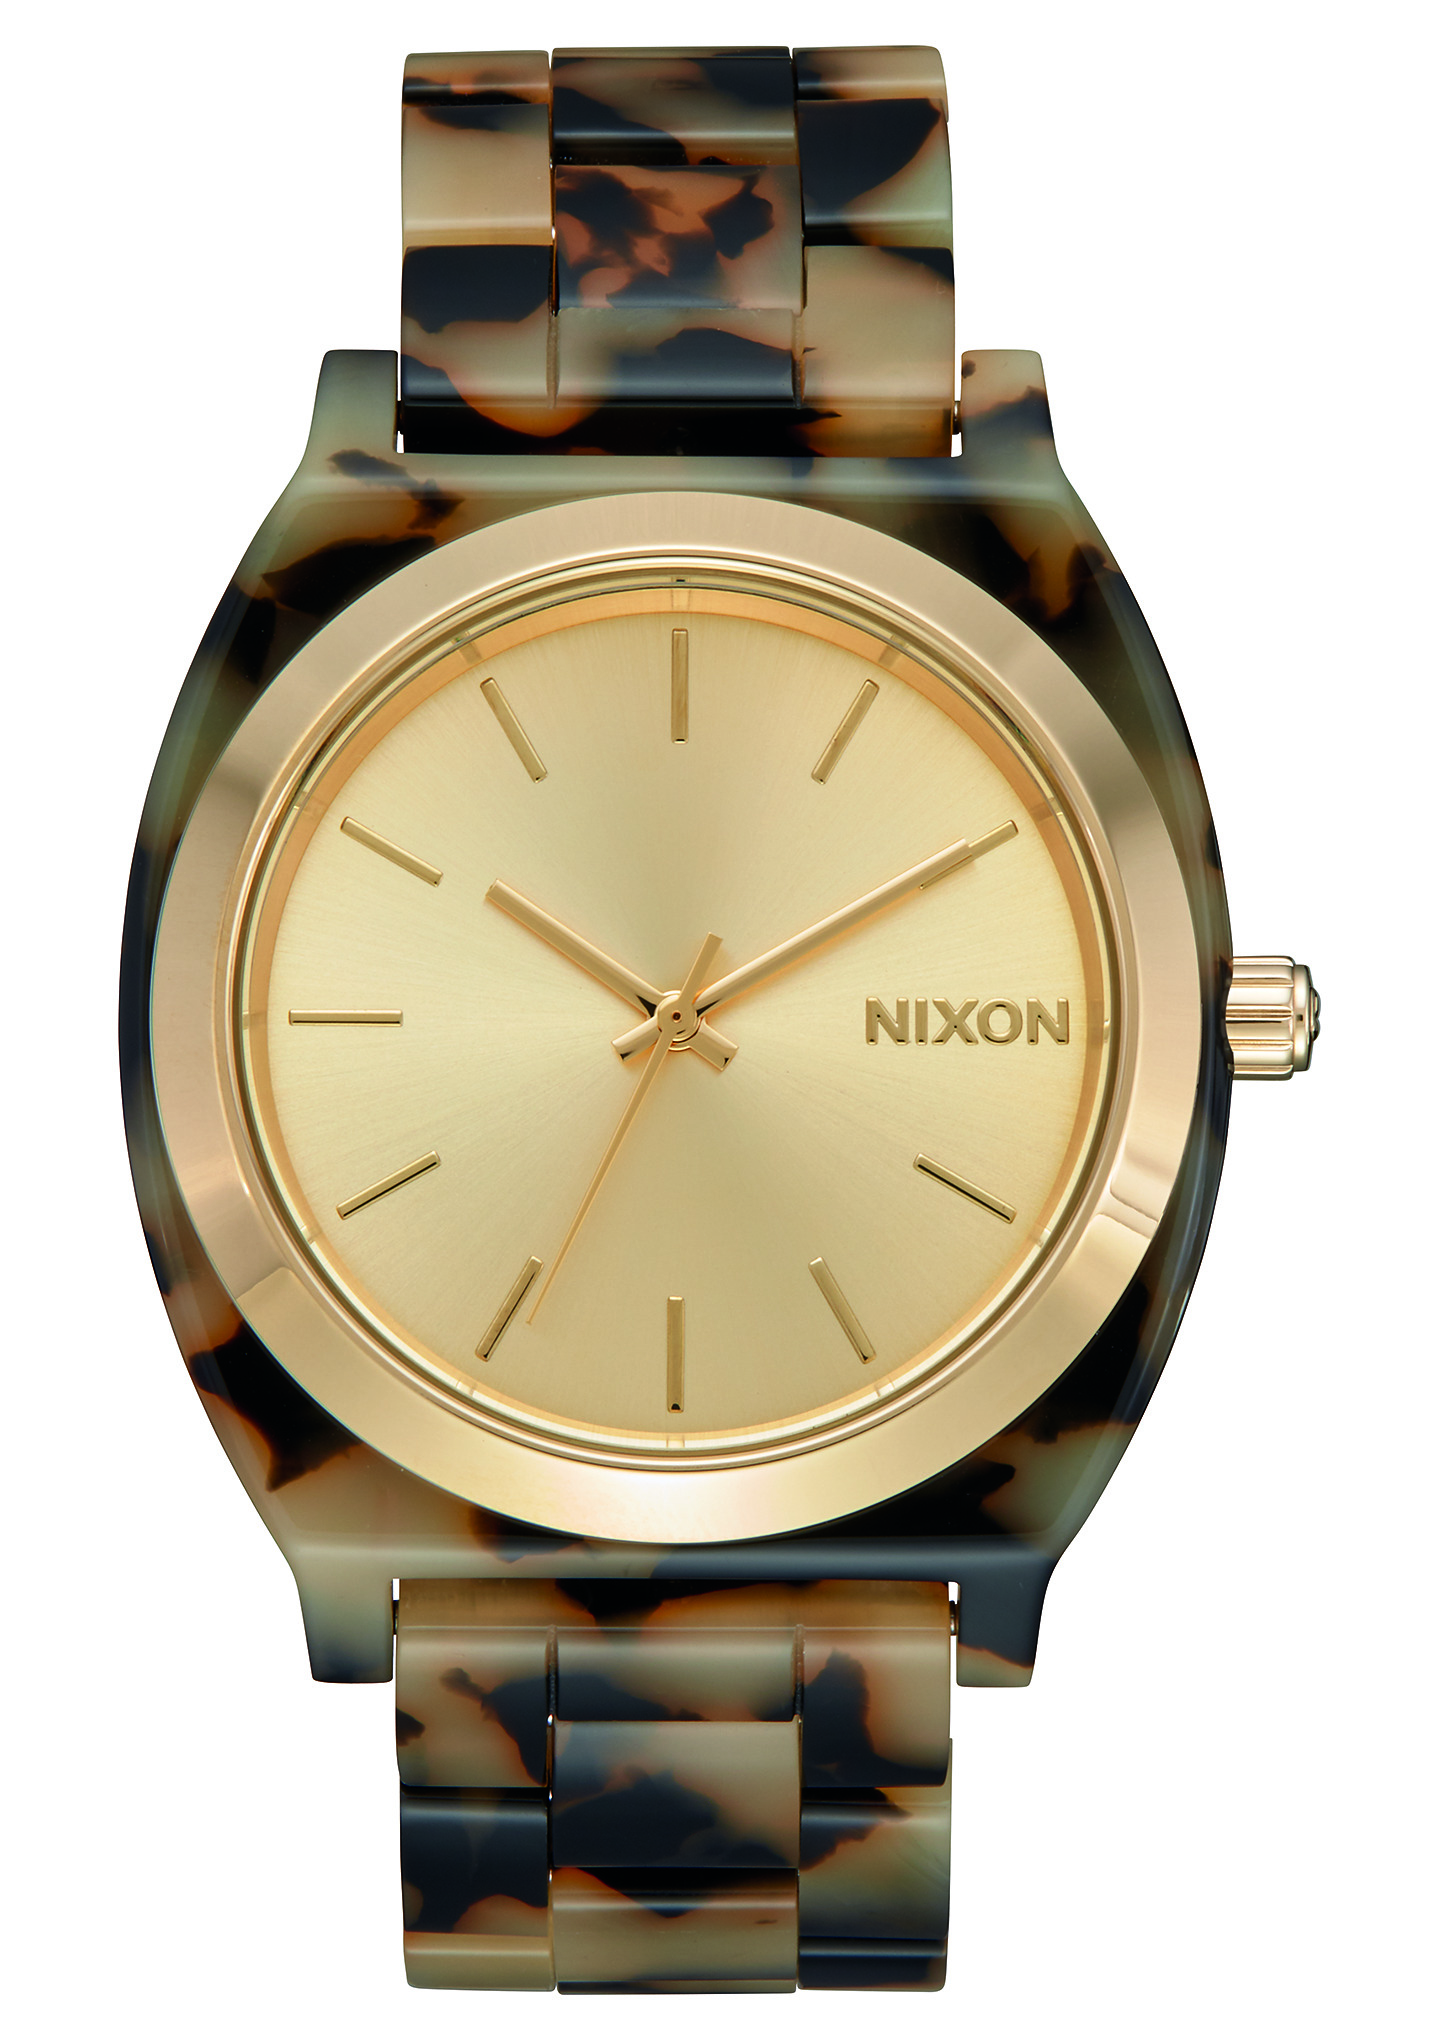 NIXON 腕時計 タイムテラーアセテート腕時計 - 腕時計(アナログ)